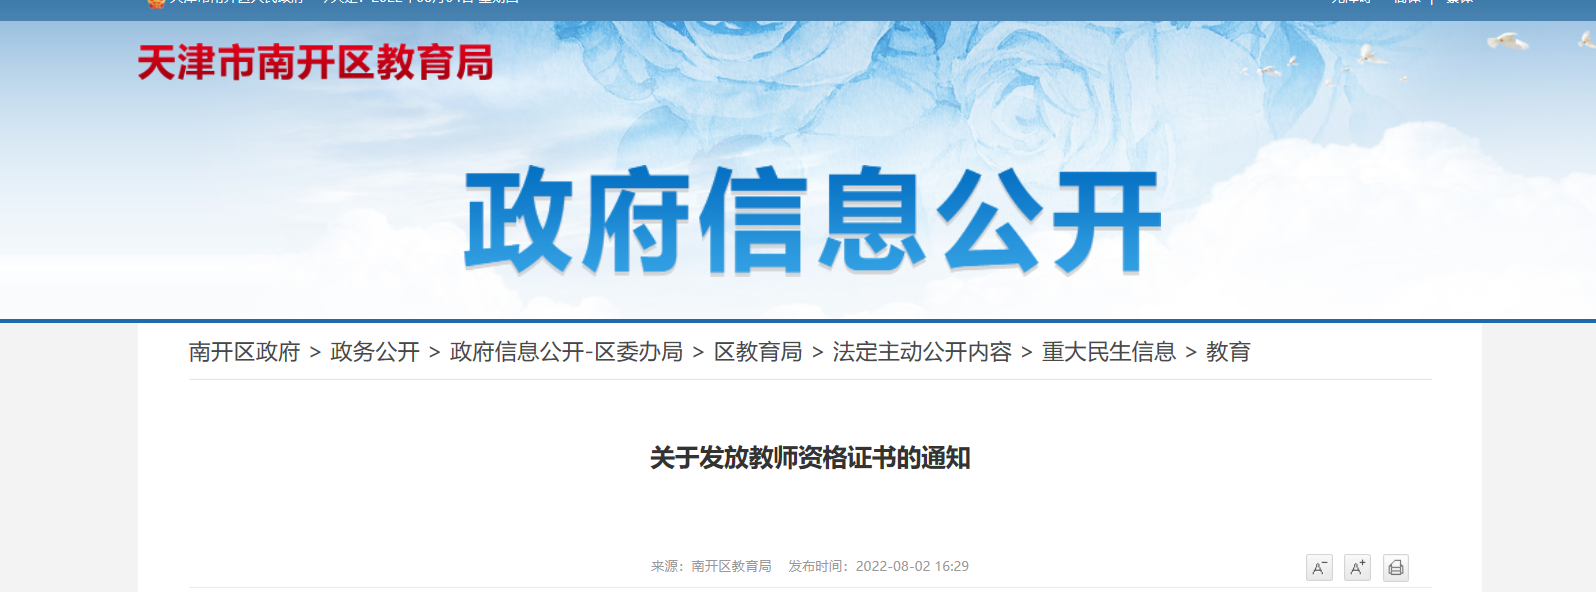 2022年天津南开区教师资格证书发放通知